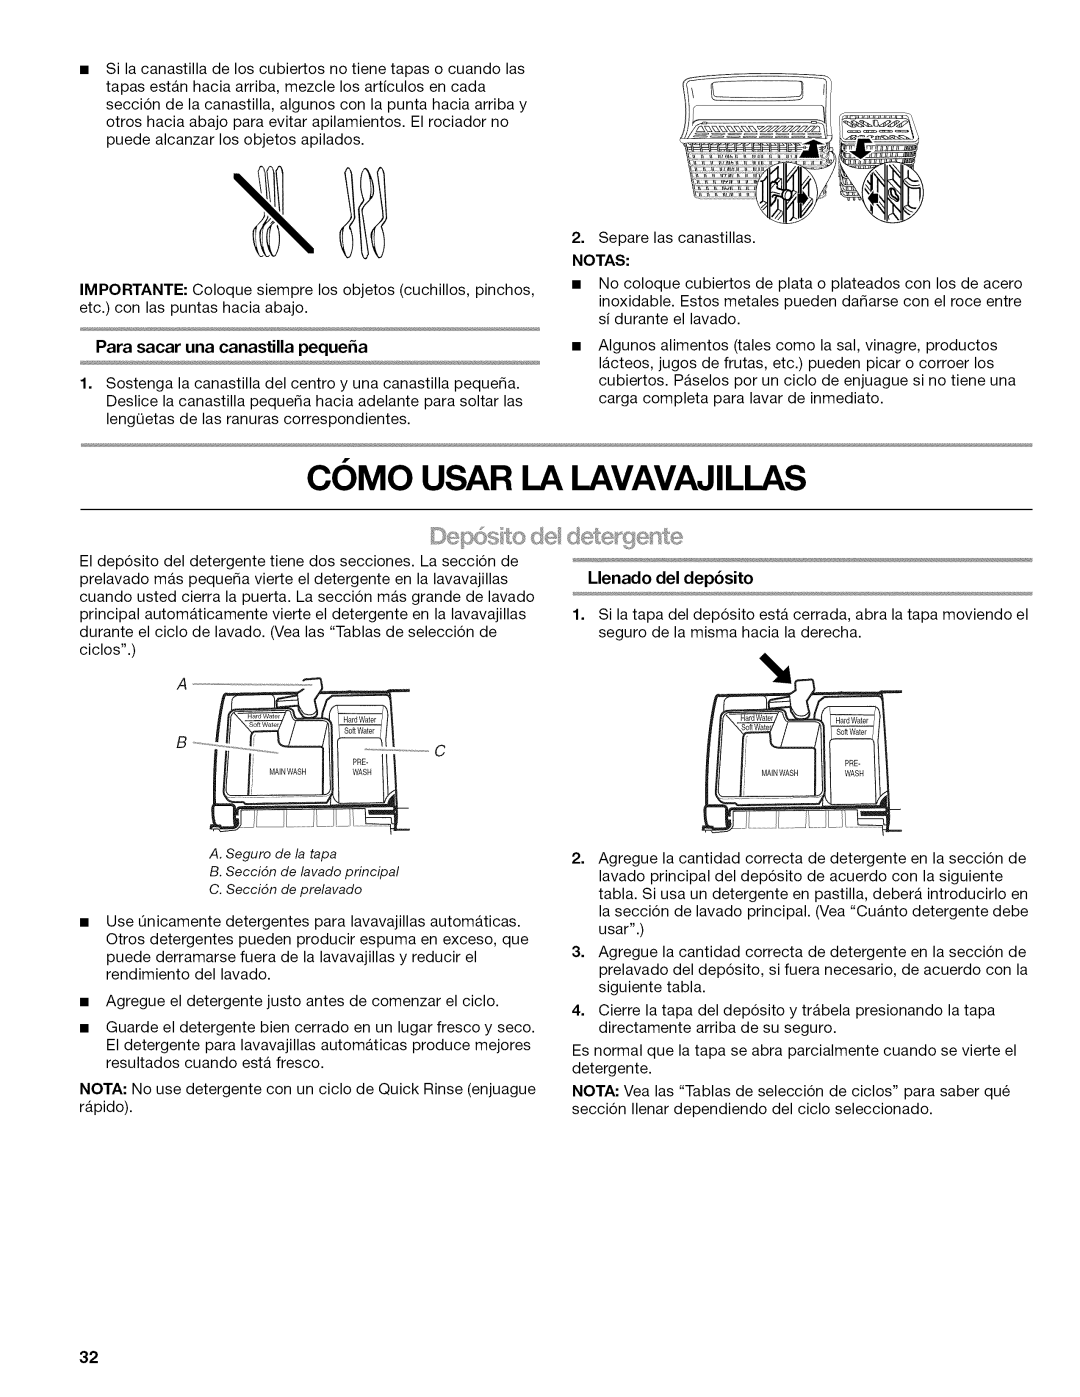 Kenmore 665.1622 manual Como Usar La Lavavajillas, Llenado del depbsito 